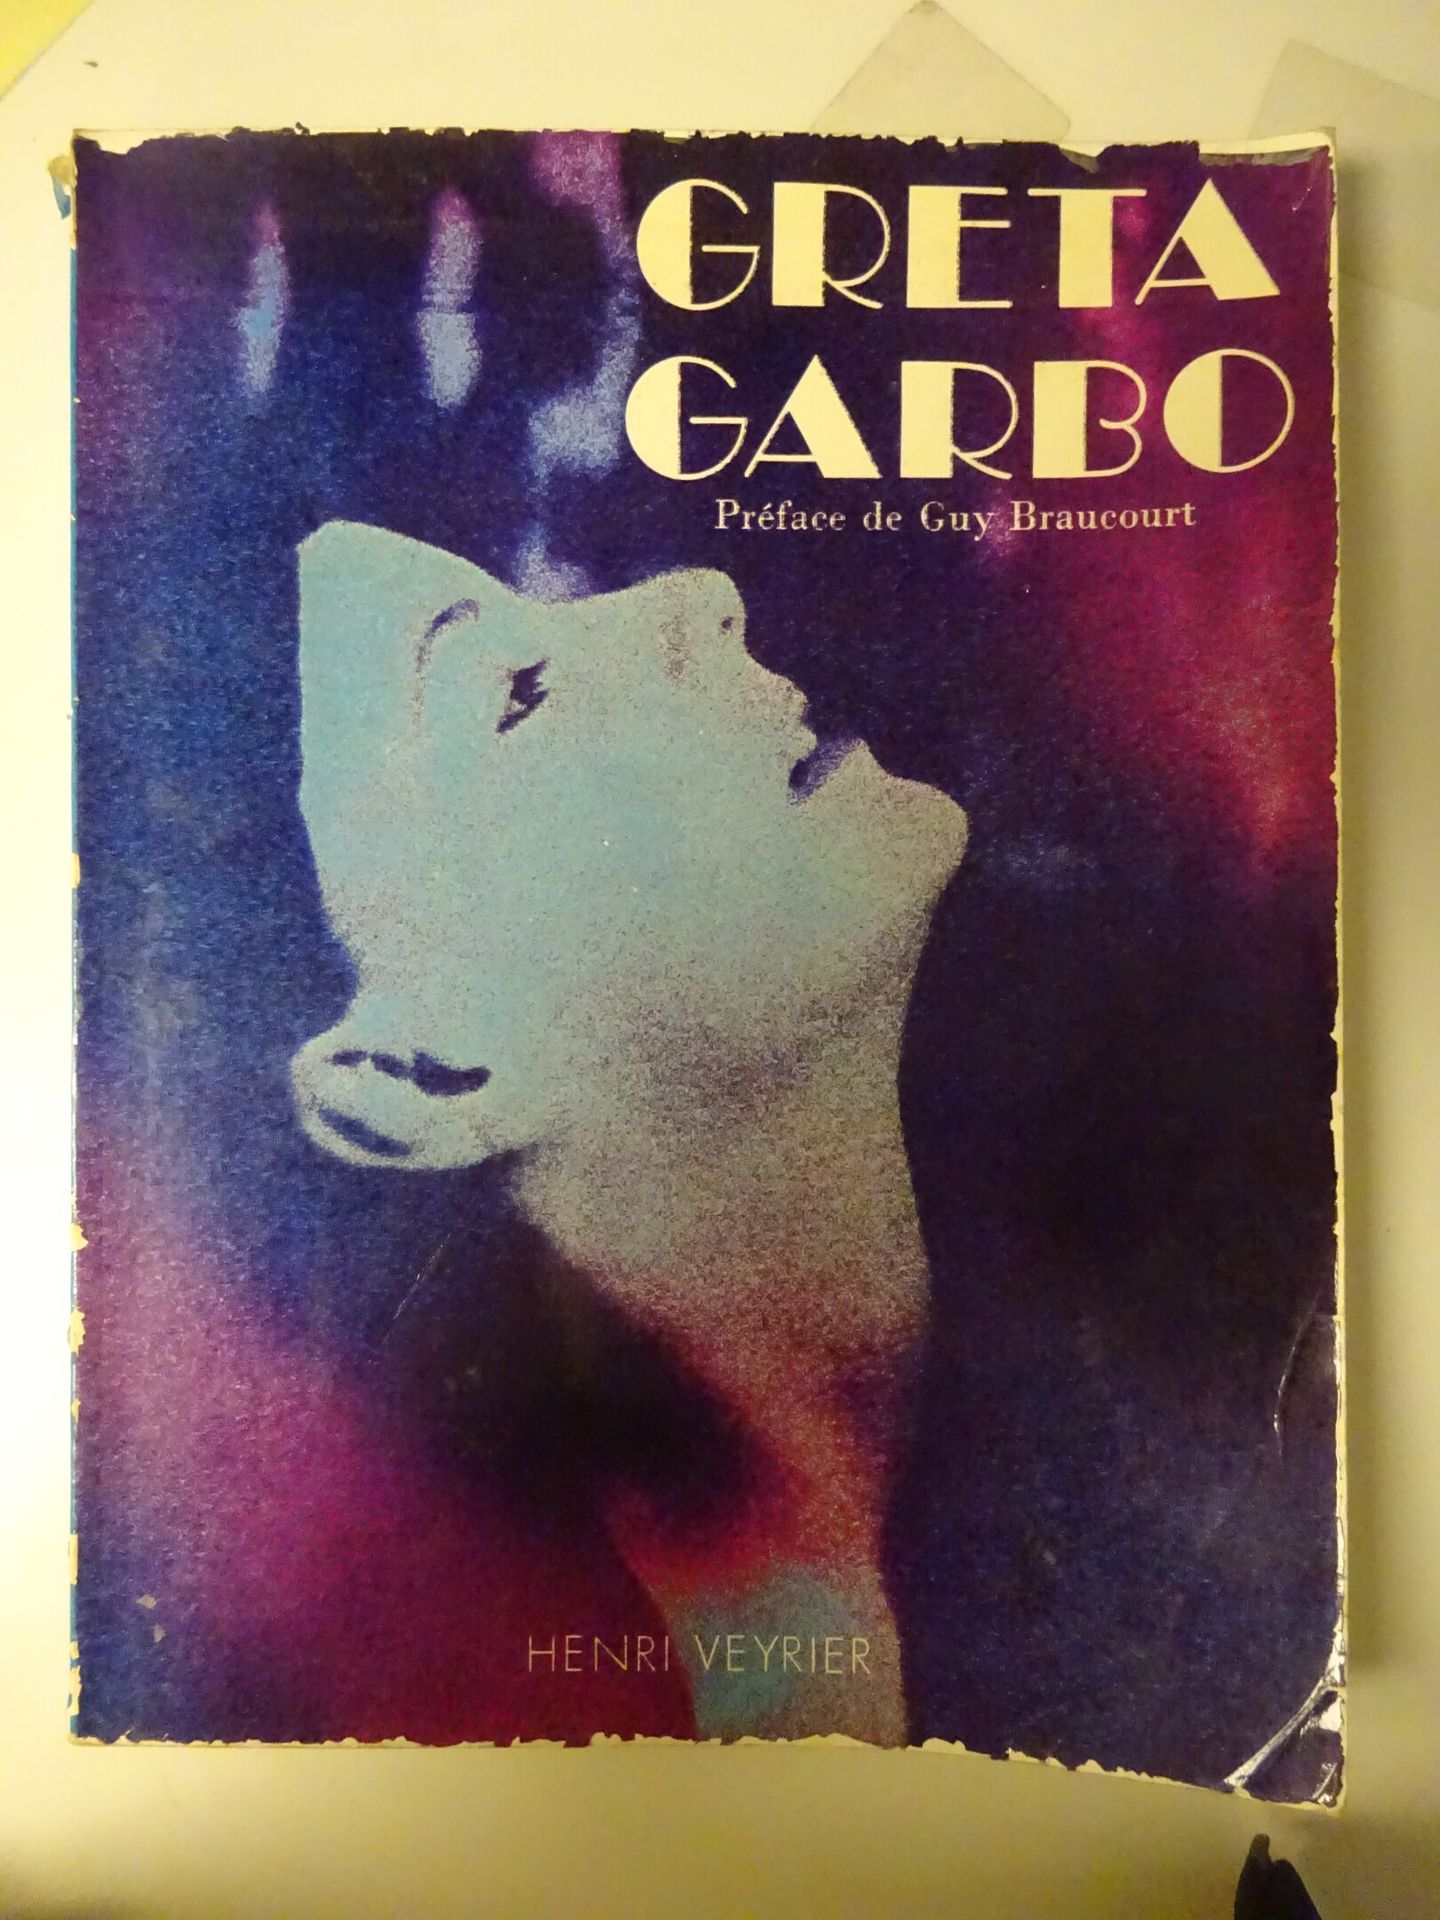 CONWAY, DION, Mc GREGOR... Greta Garbo. 

Henri Veyrier editore, Parigi, 1976. 
&hellip;